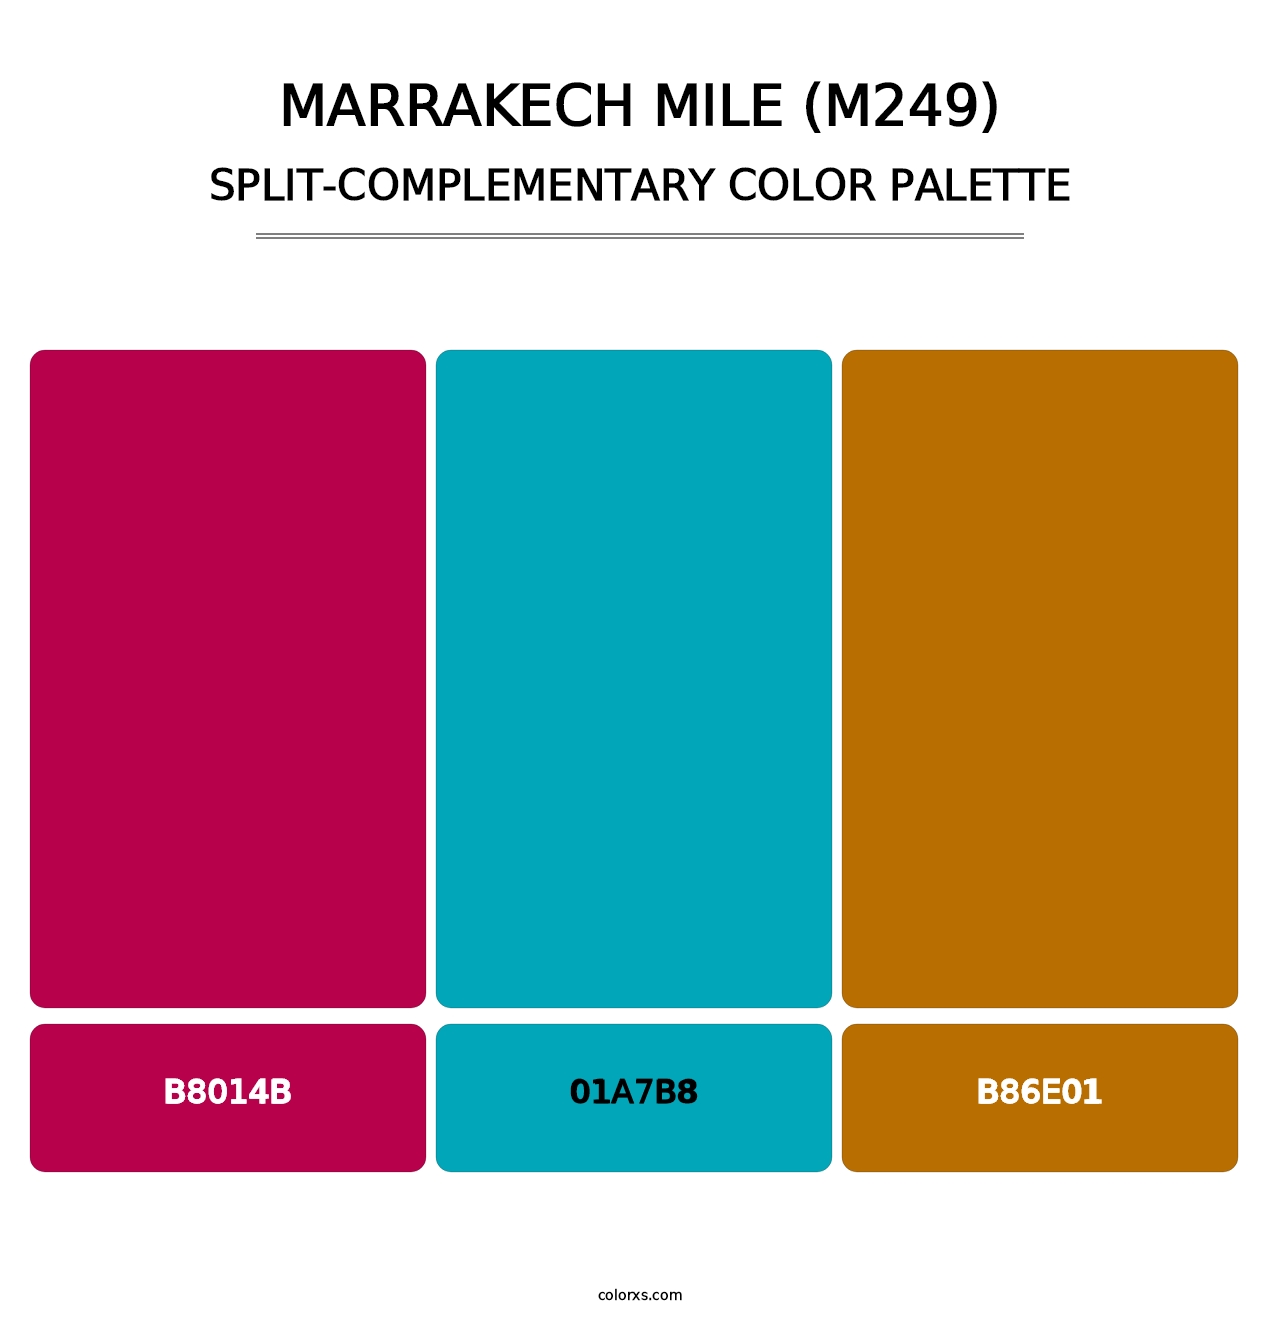 Marrakech Mile (M249) - Split-Complementary Color Palette